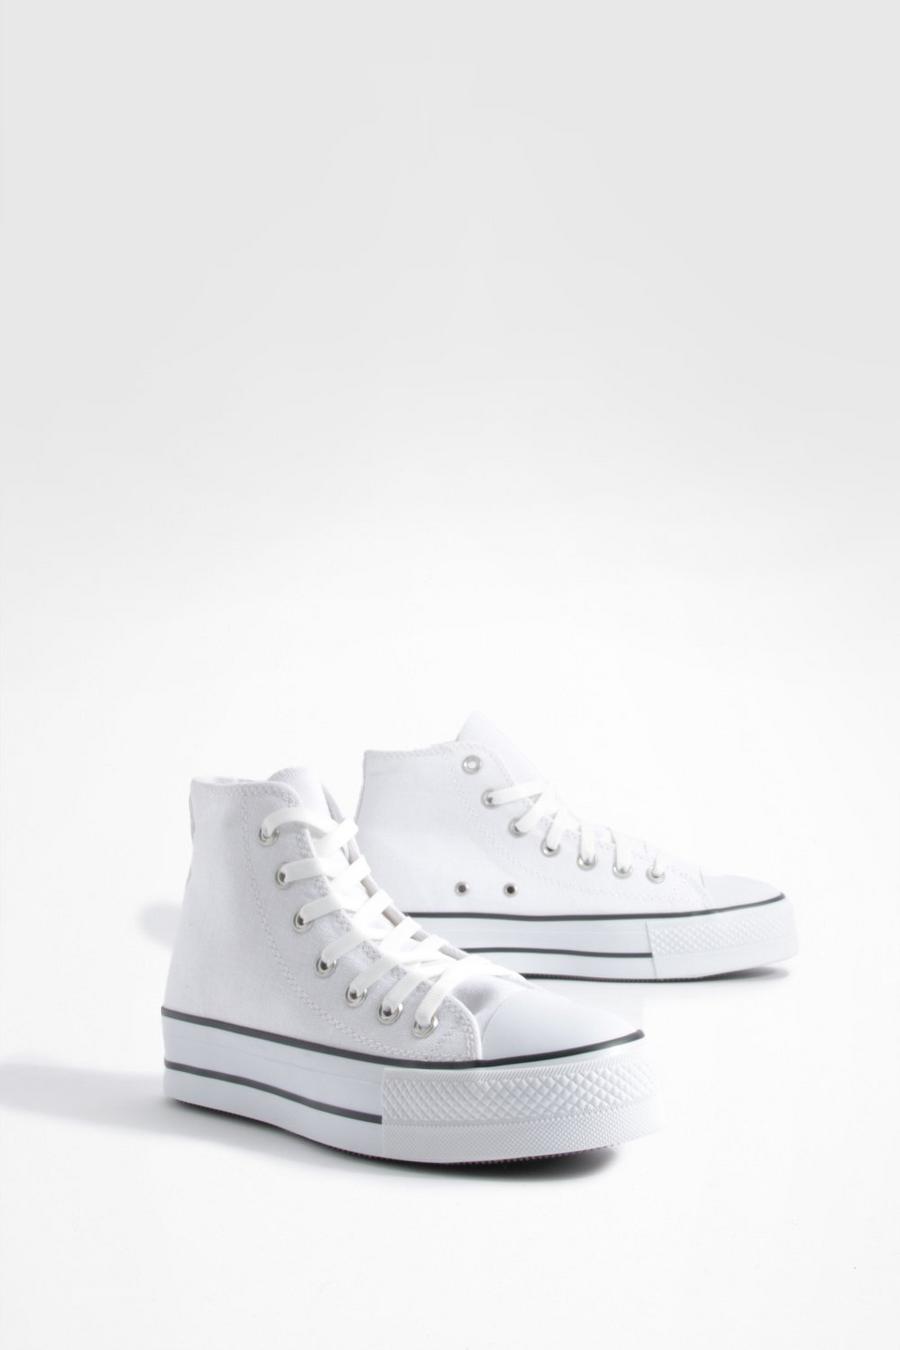 Zapatillas de lona altas con suela gruesa, White blanco